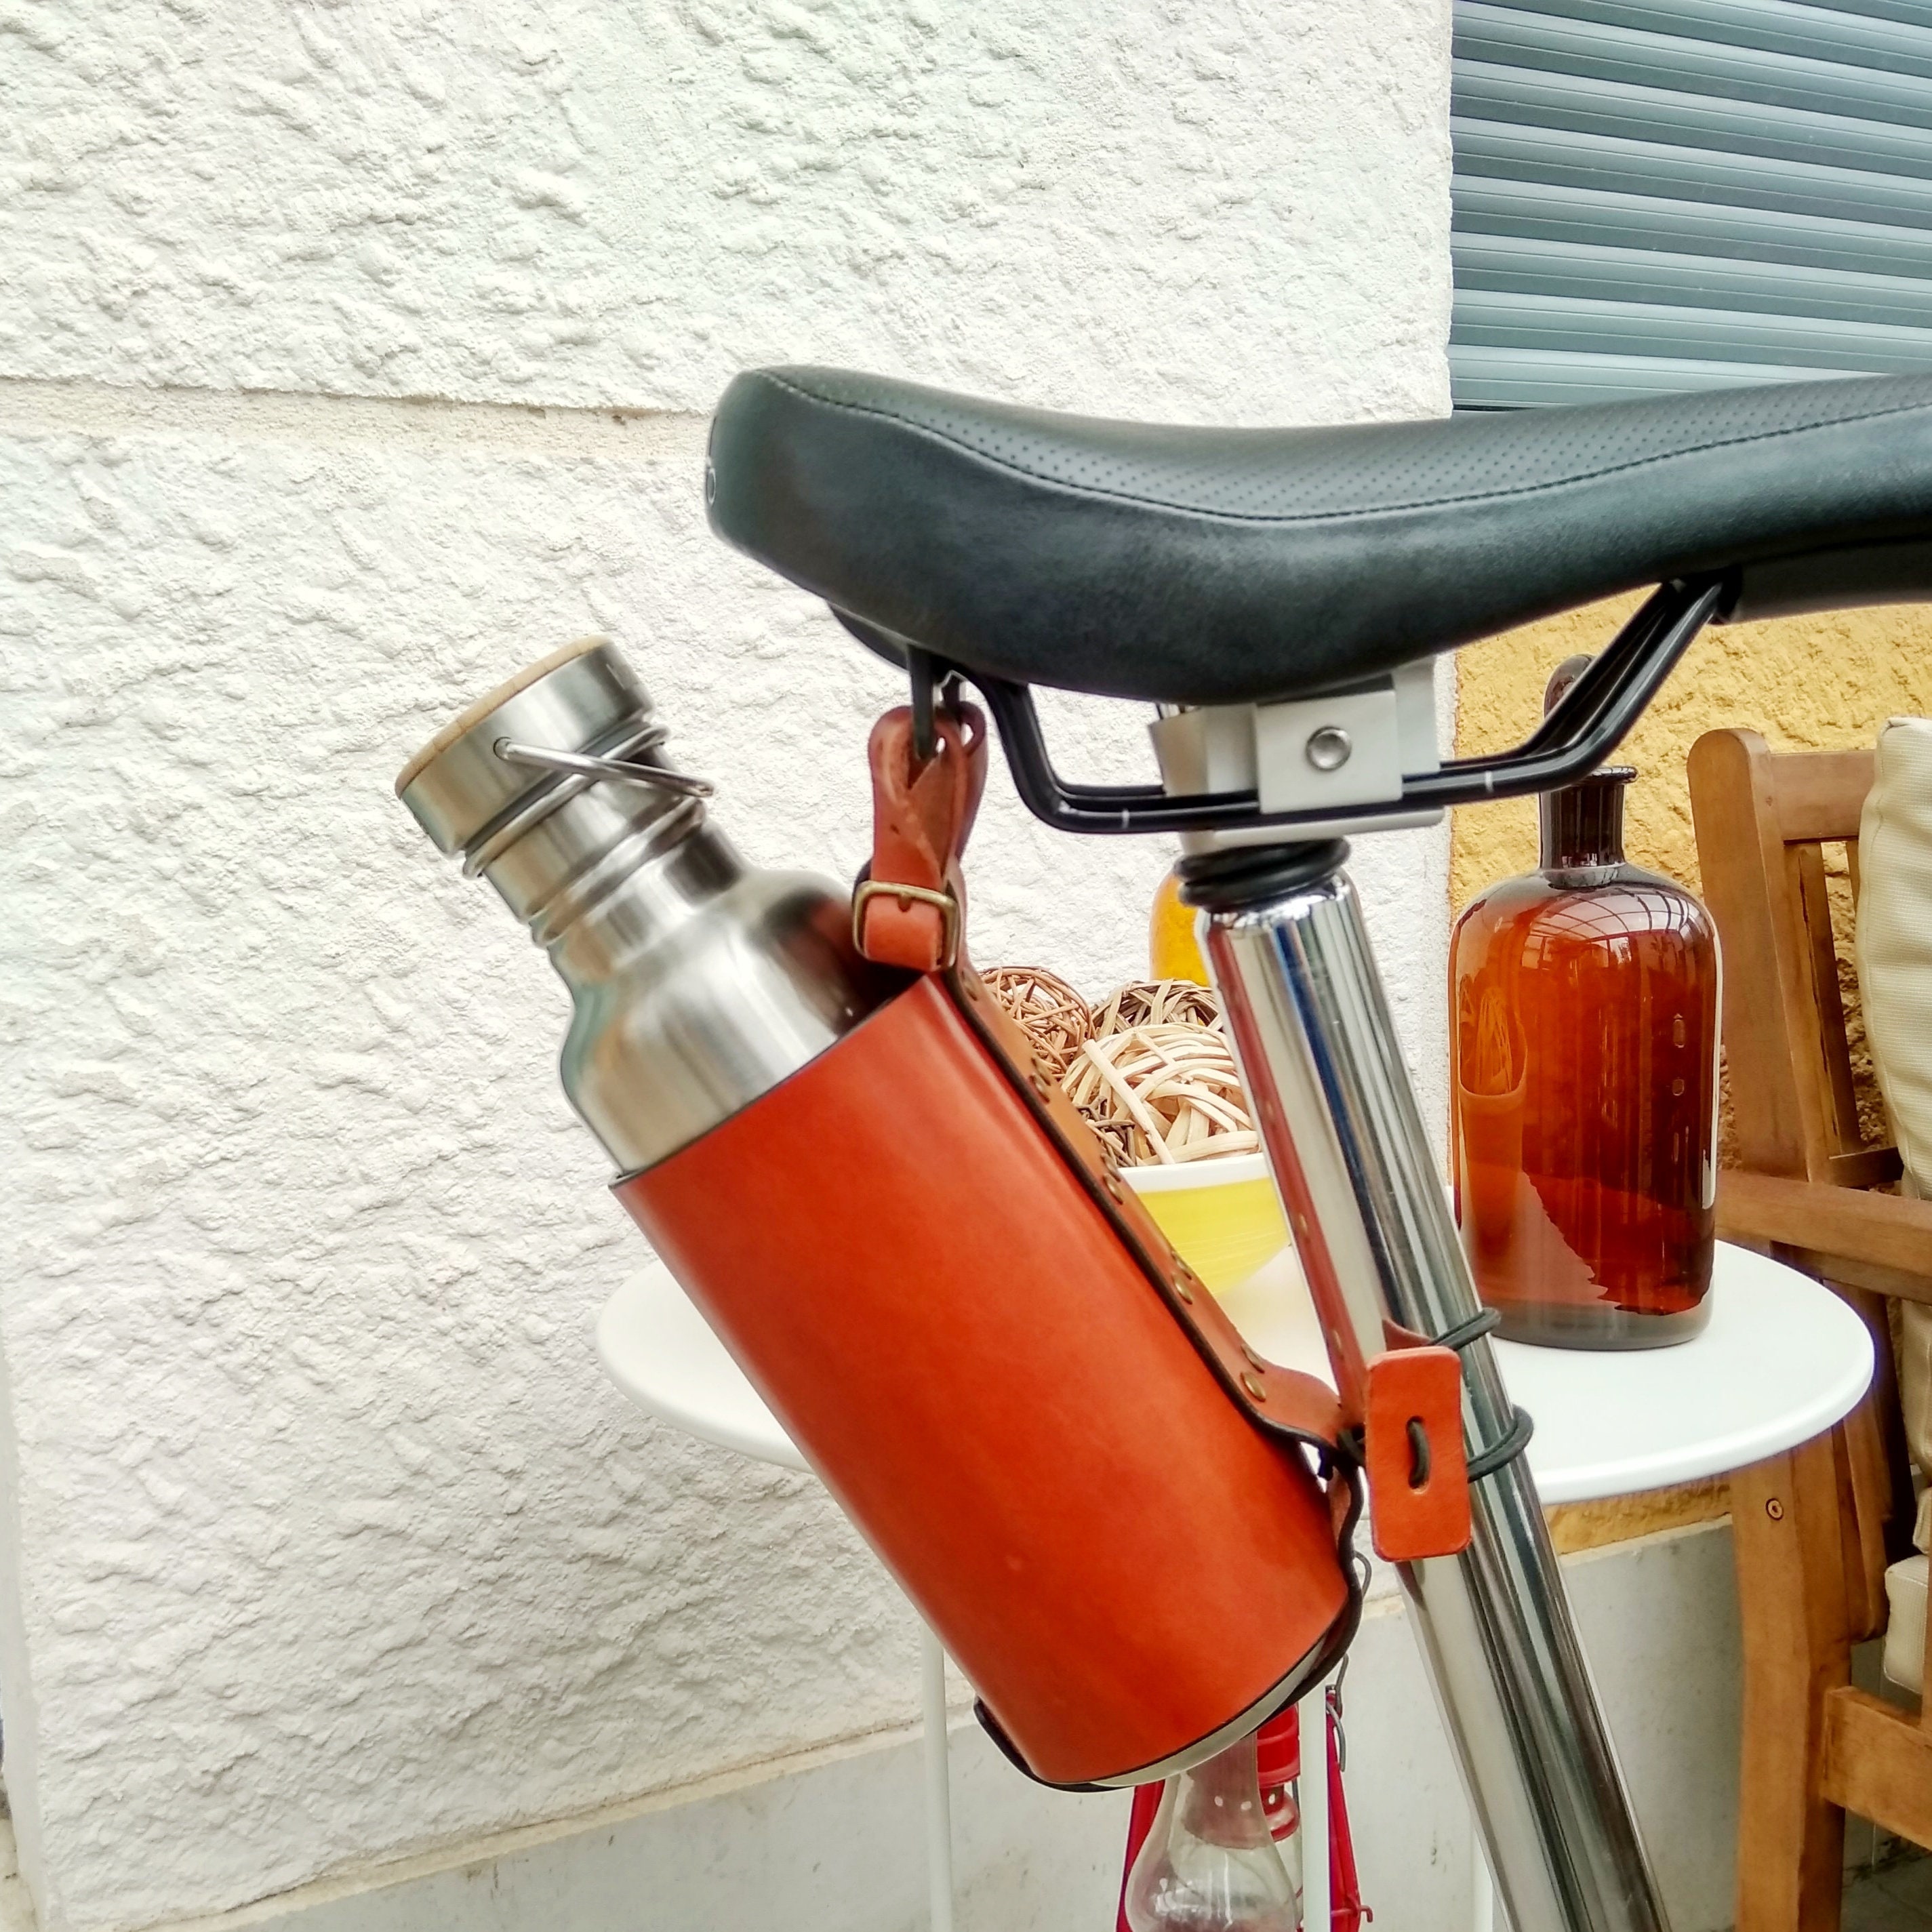 Designer LV cycling water bottle bidon